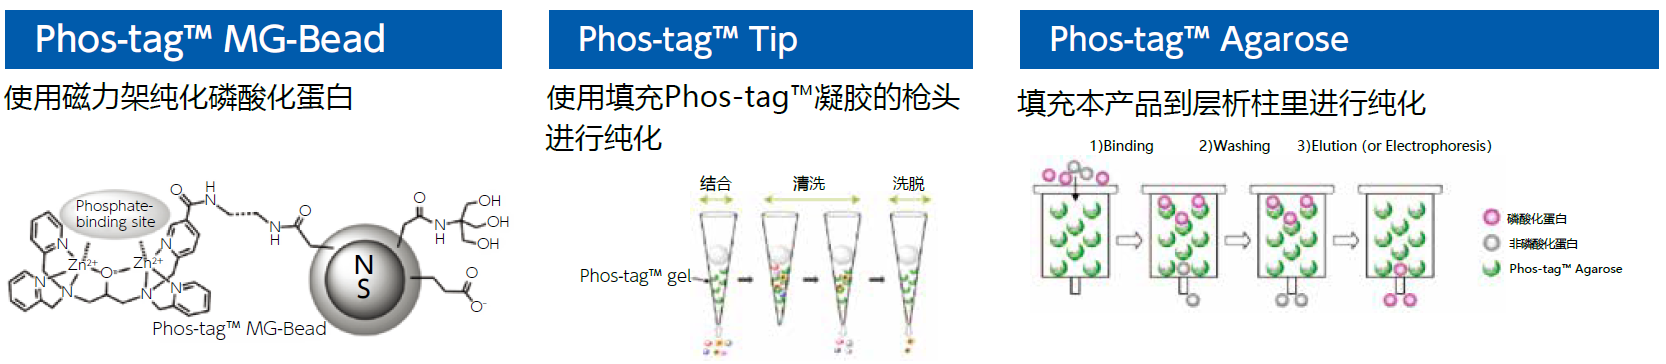 磷酸化蛋白分析用——Phos-tag™ 系列产品